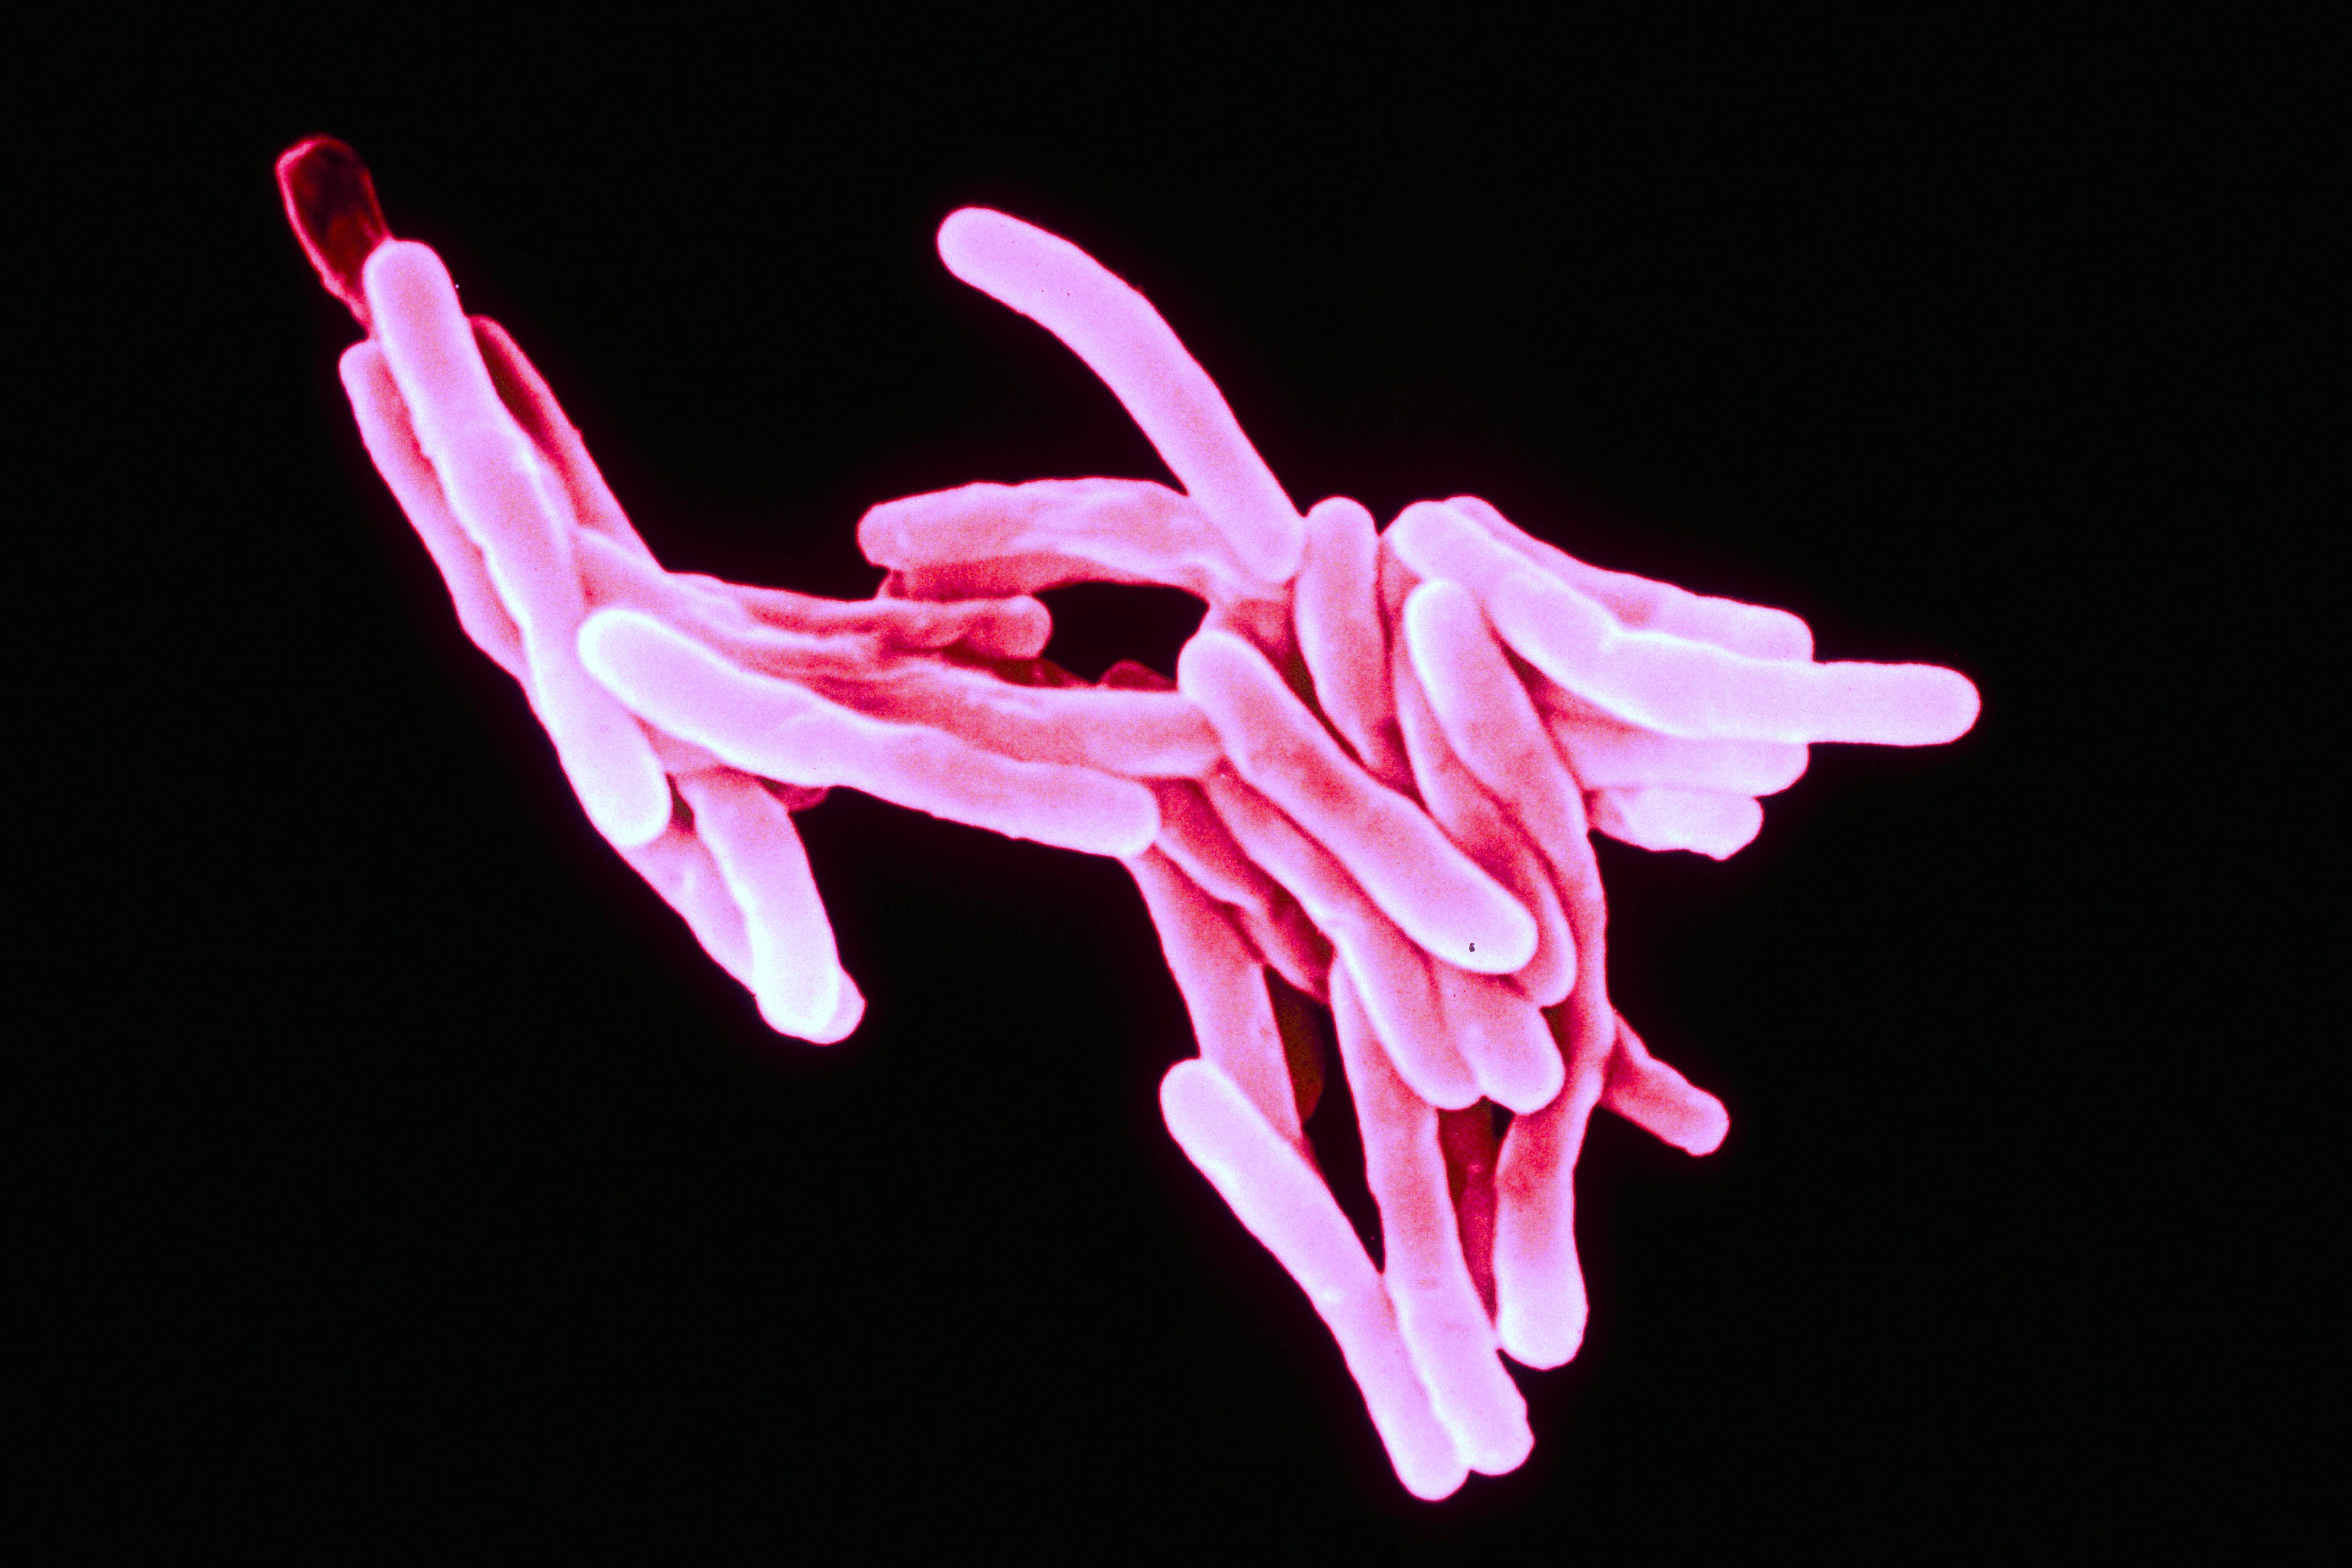 Rasterelektronenmikroskopische Aufnahme des für Tuberkulose verantwortlichen Mycobacterium tuberculosis.